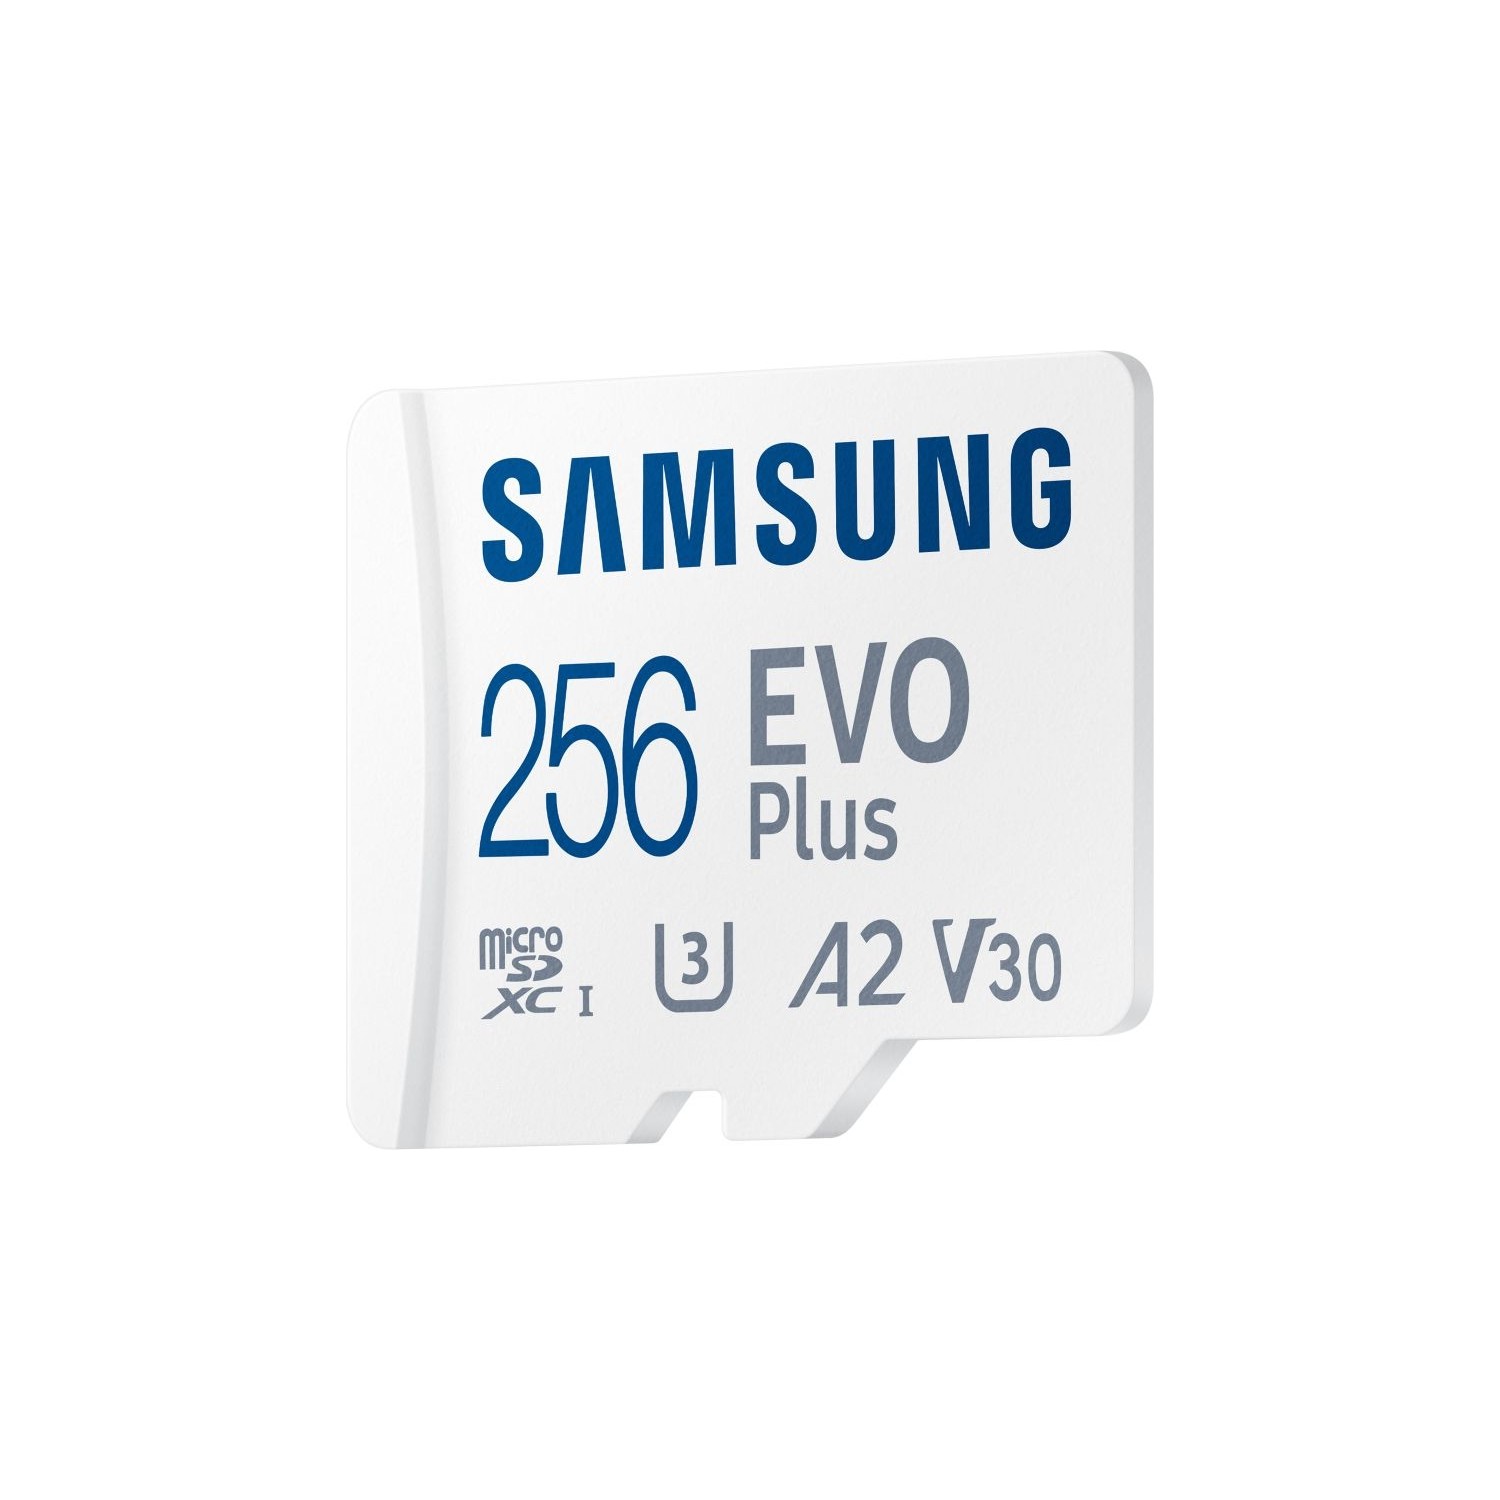 Samsung Evo Plus Microsd Hafıza Kartı 256 GB Fiyatı